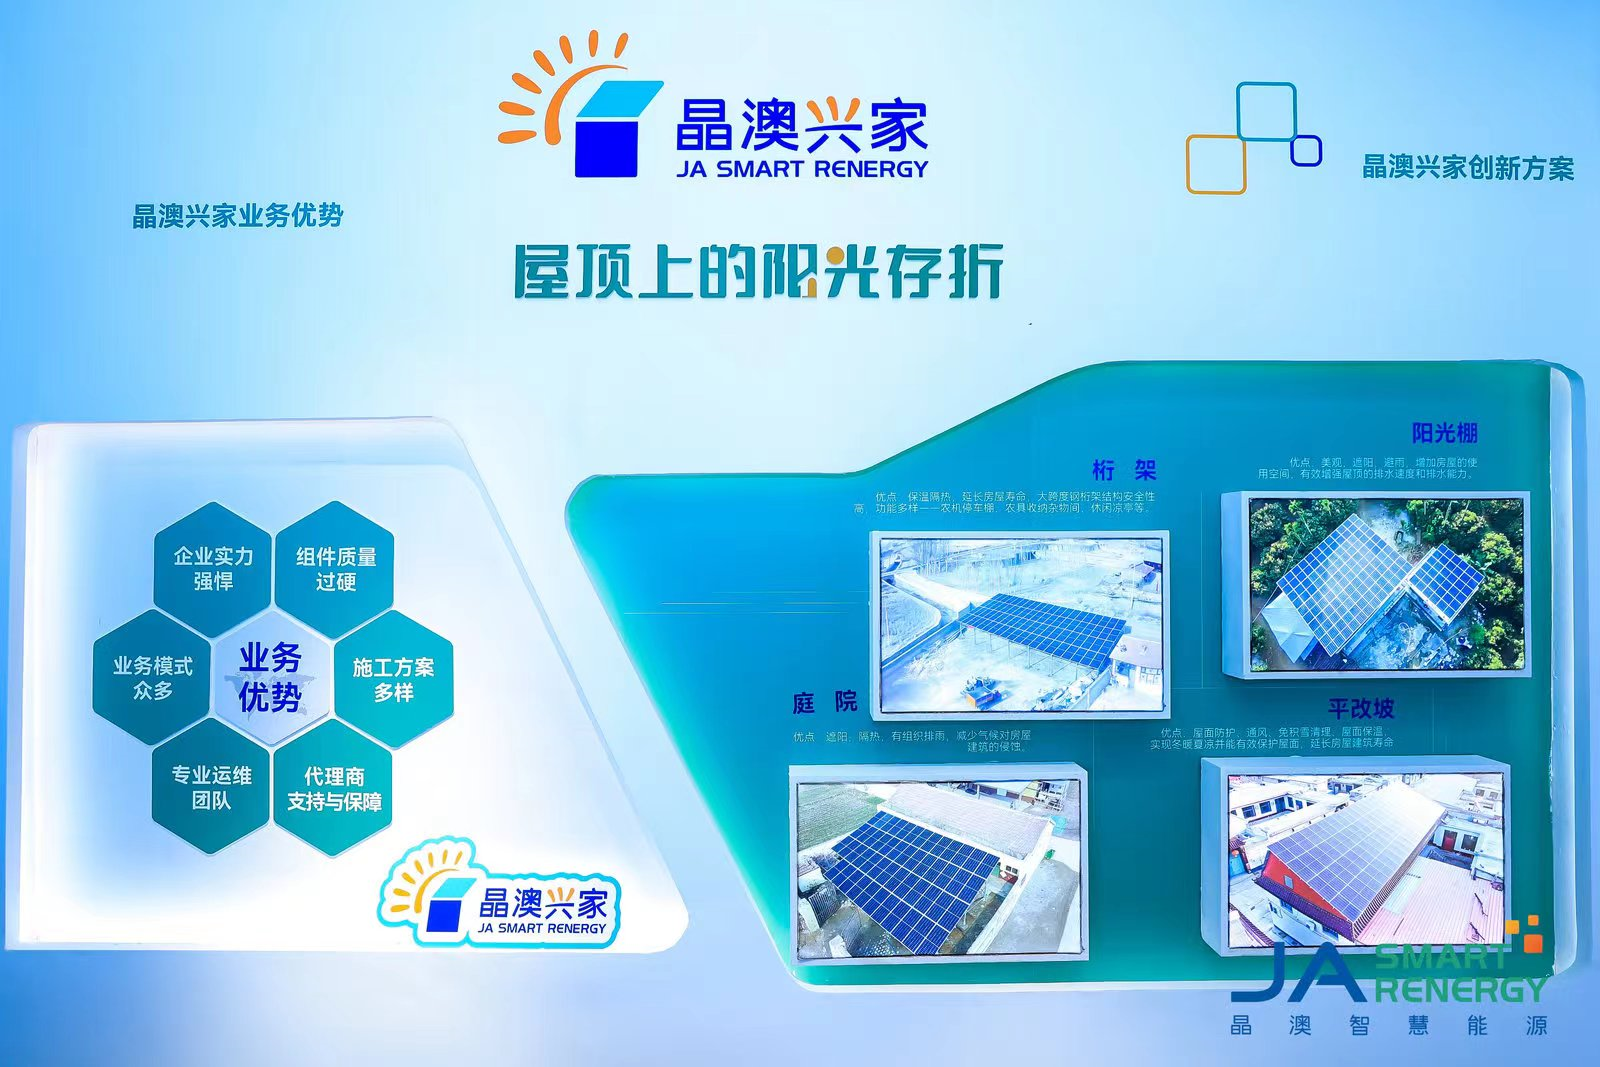 一起为零碳绽放 晶澳智慧能源携新品亮相2023上海SNEC